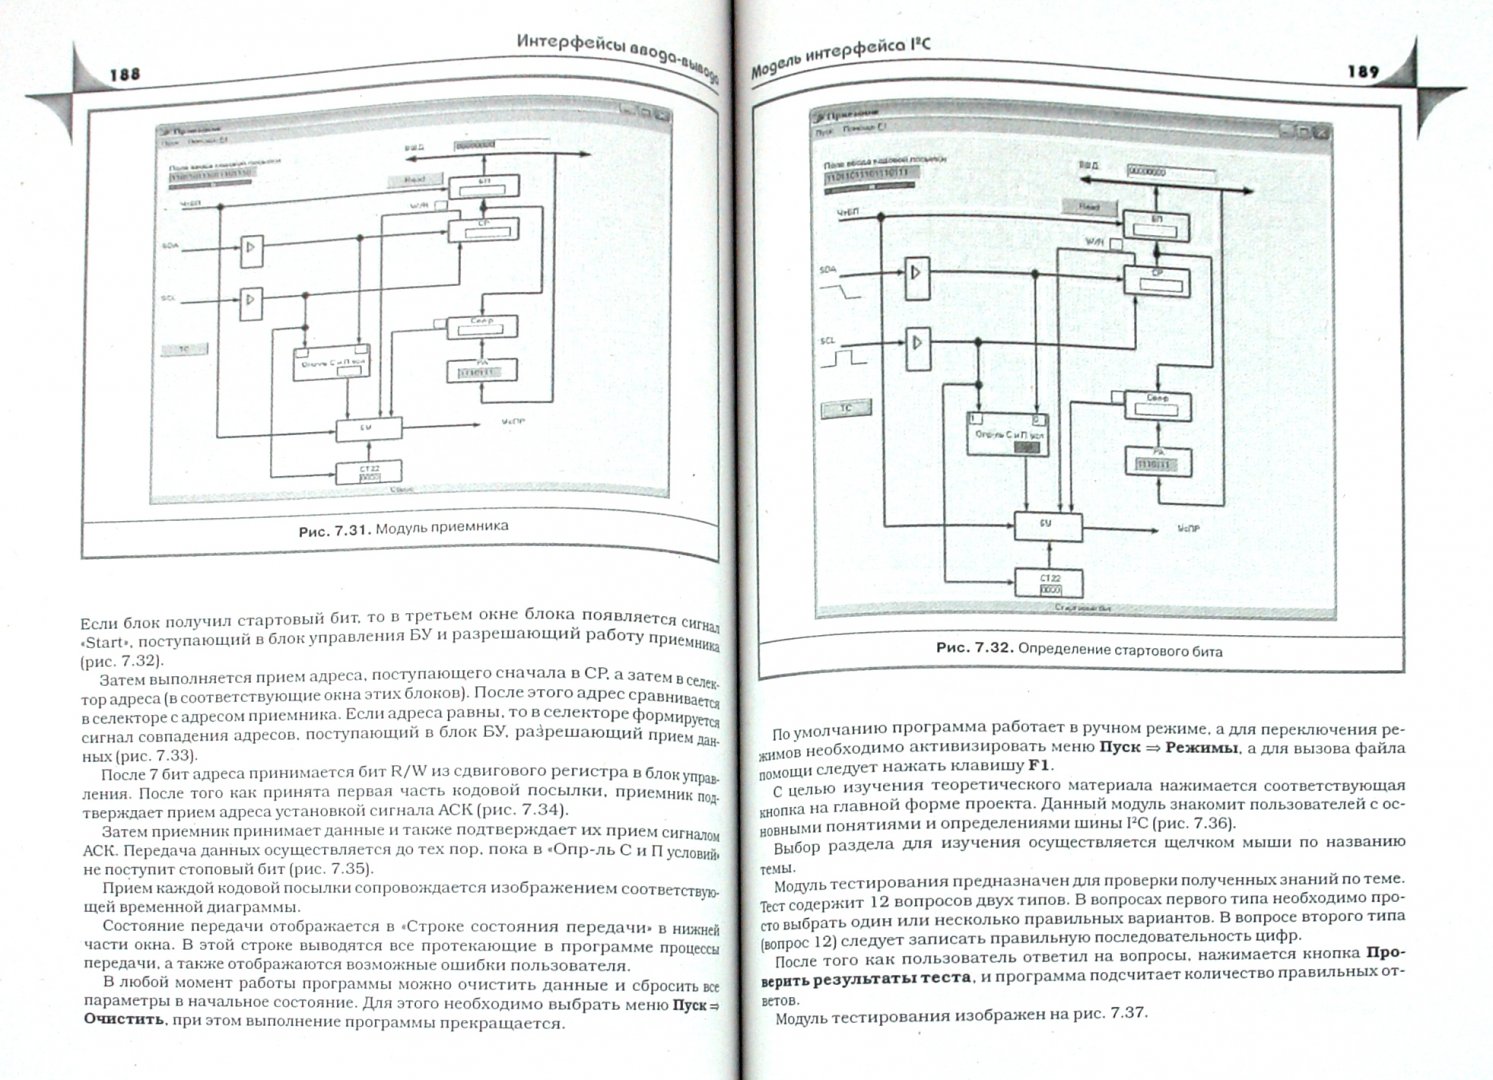 Иллюстрация 1 из 5 для Интерактивный практикум по компьютерной схемотехнике на Delphi (+CD) - Вадим Авдеев | Лабиринт - книги. Источник: Лабиринт